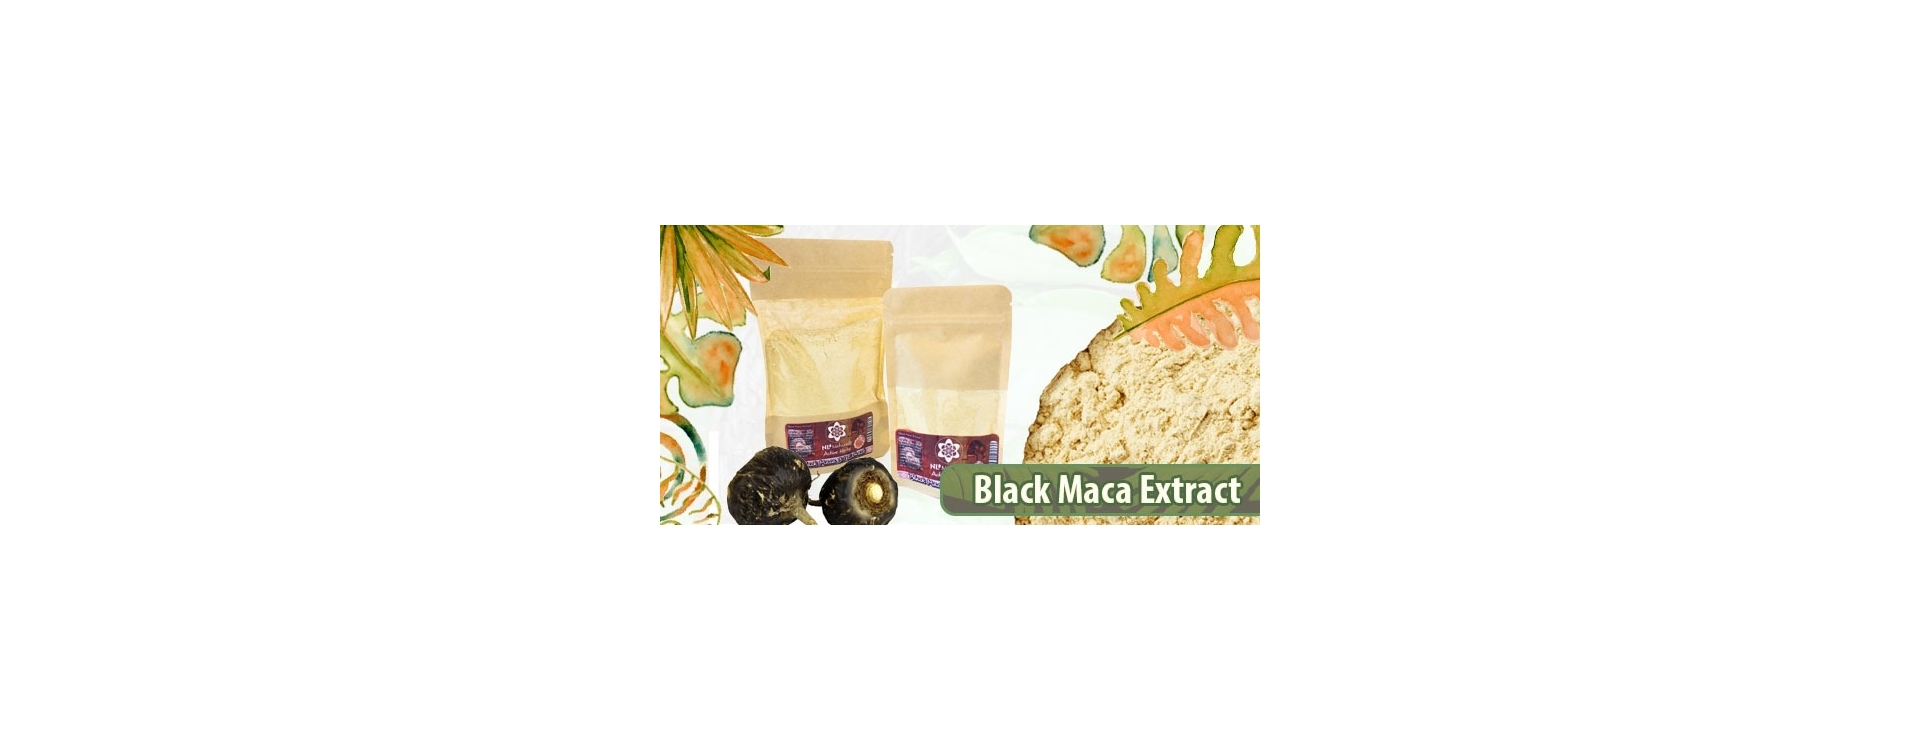 New: NLNaturals Black Maca Extract!